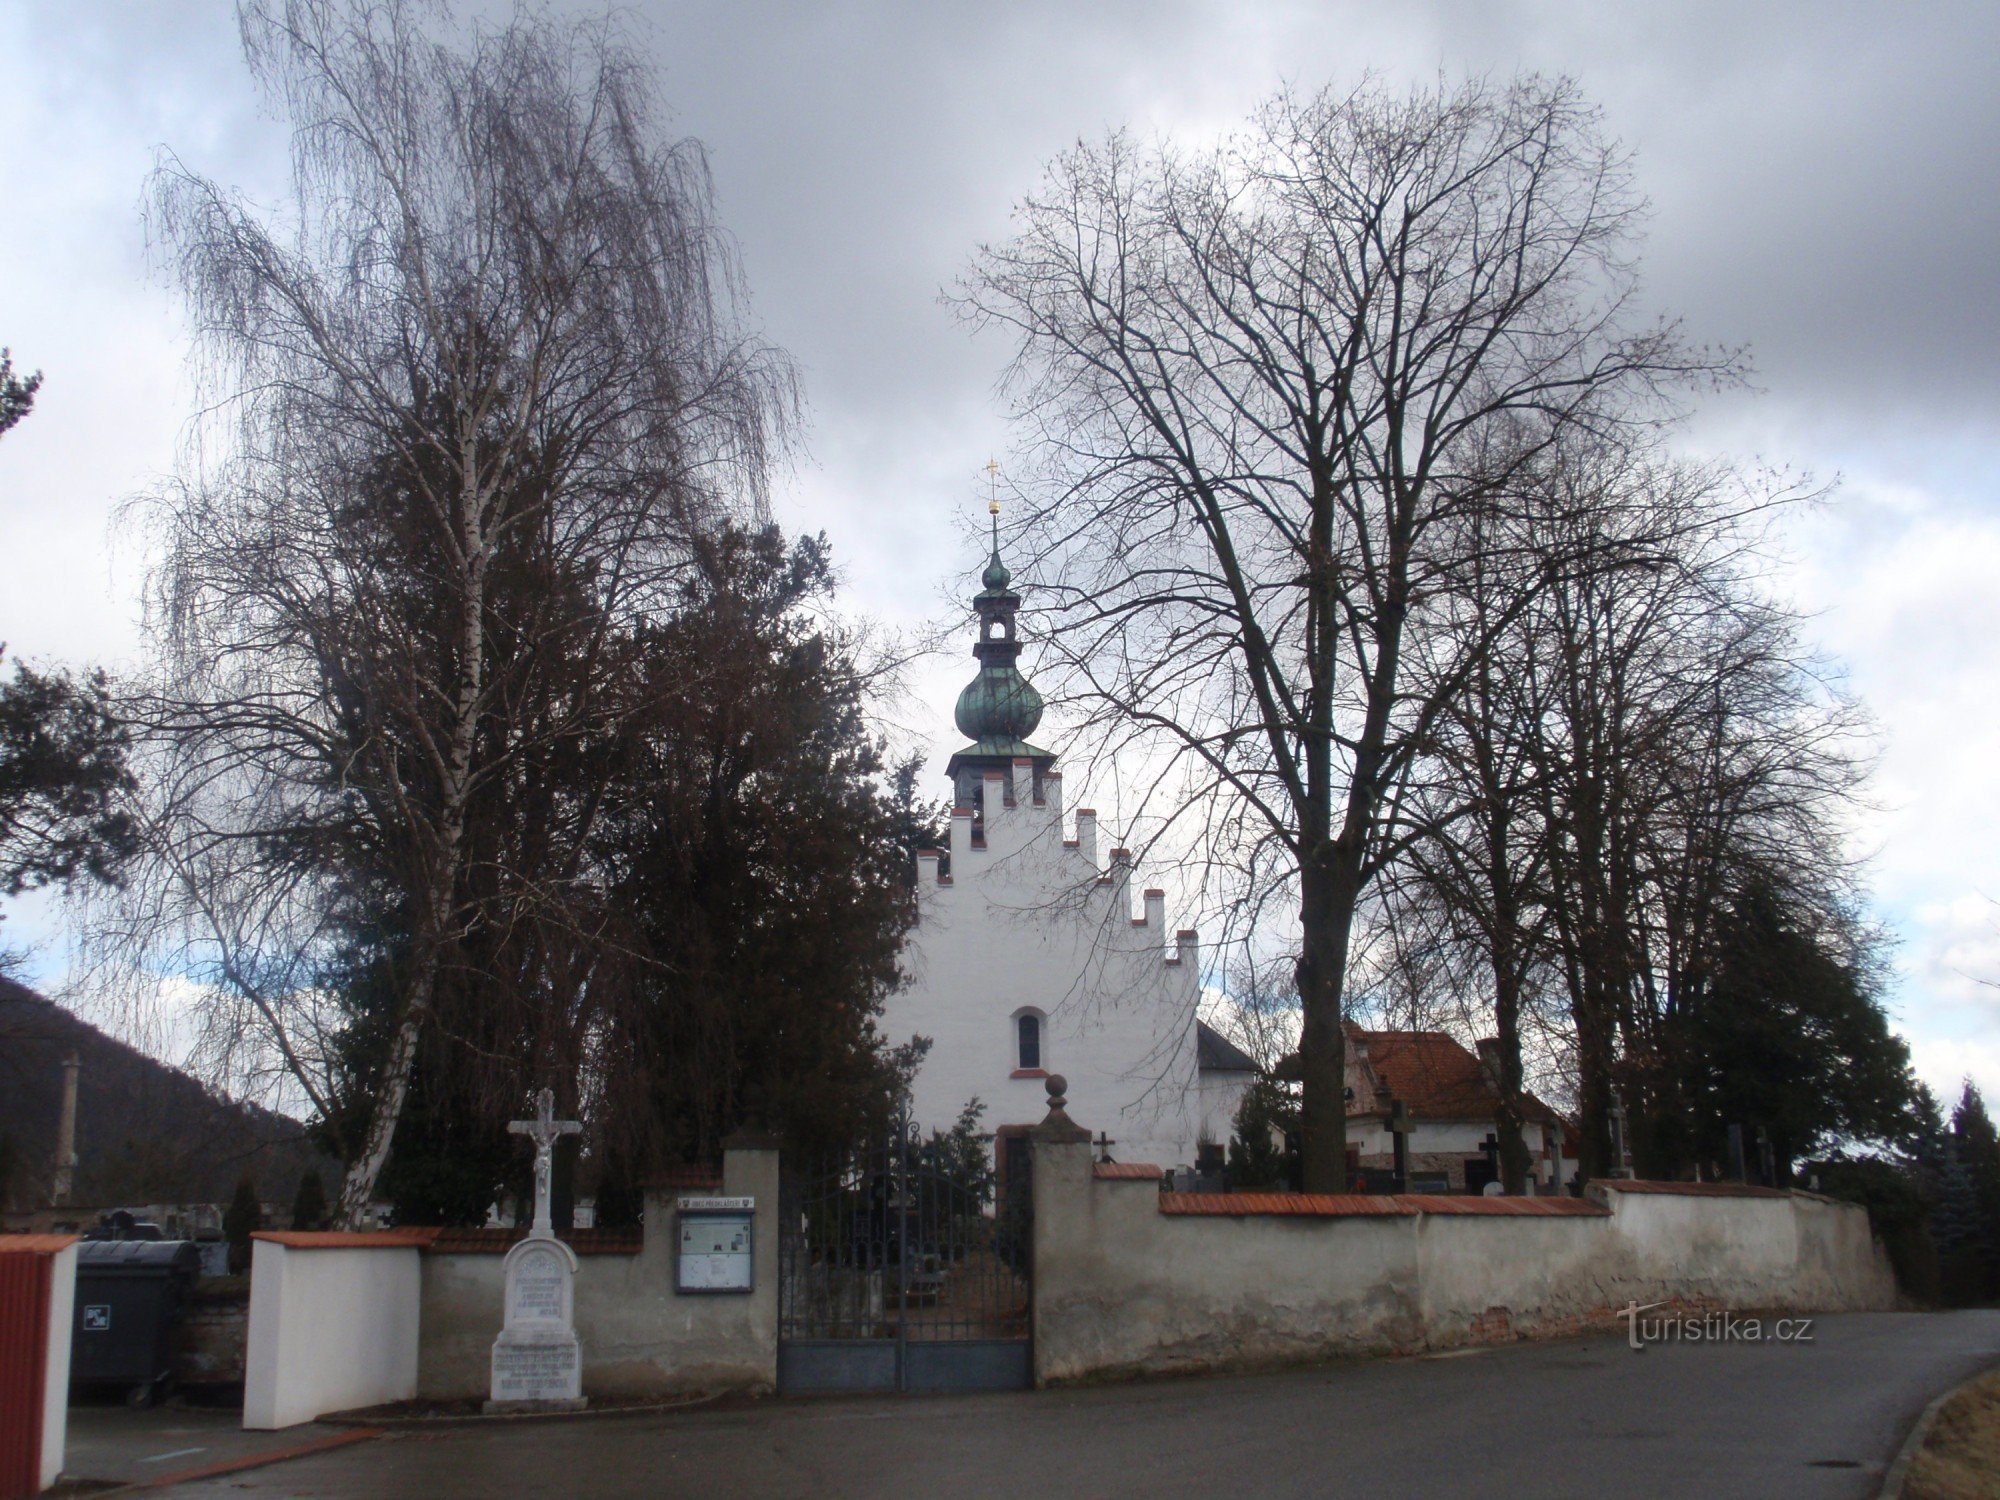 Pre-convent near Tišnov - small monuments